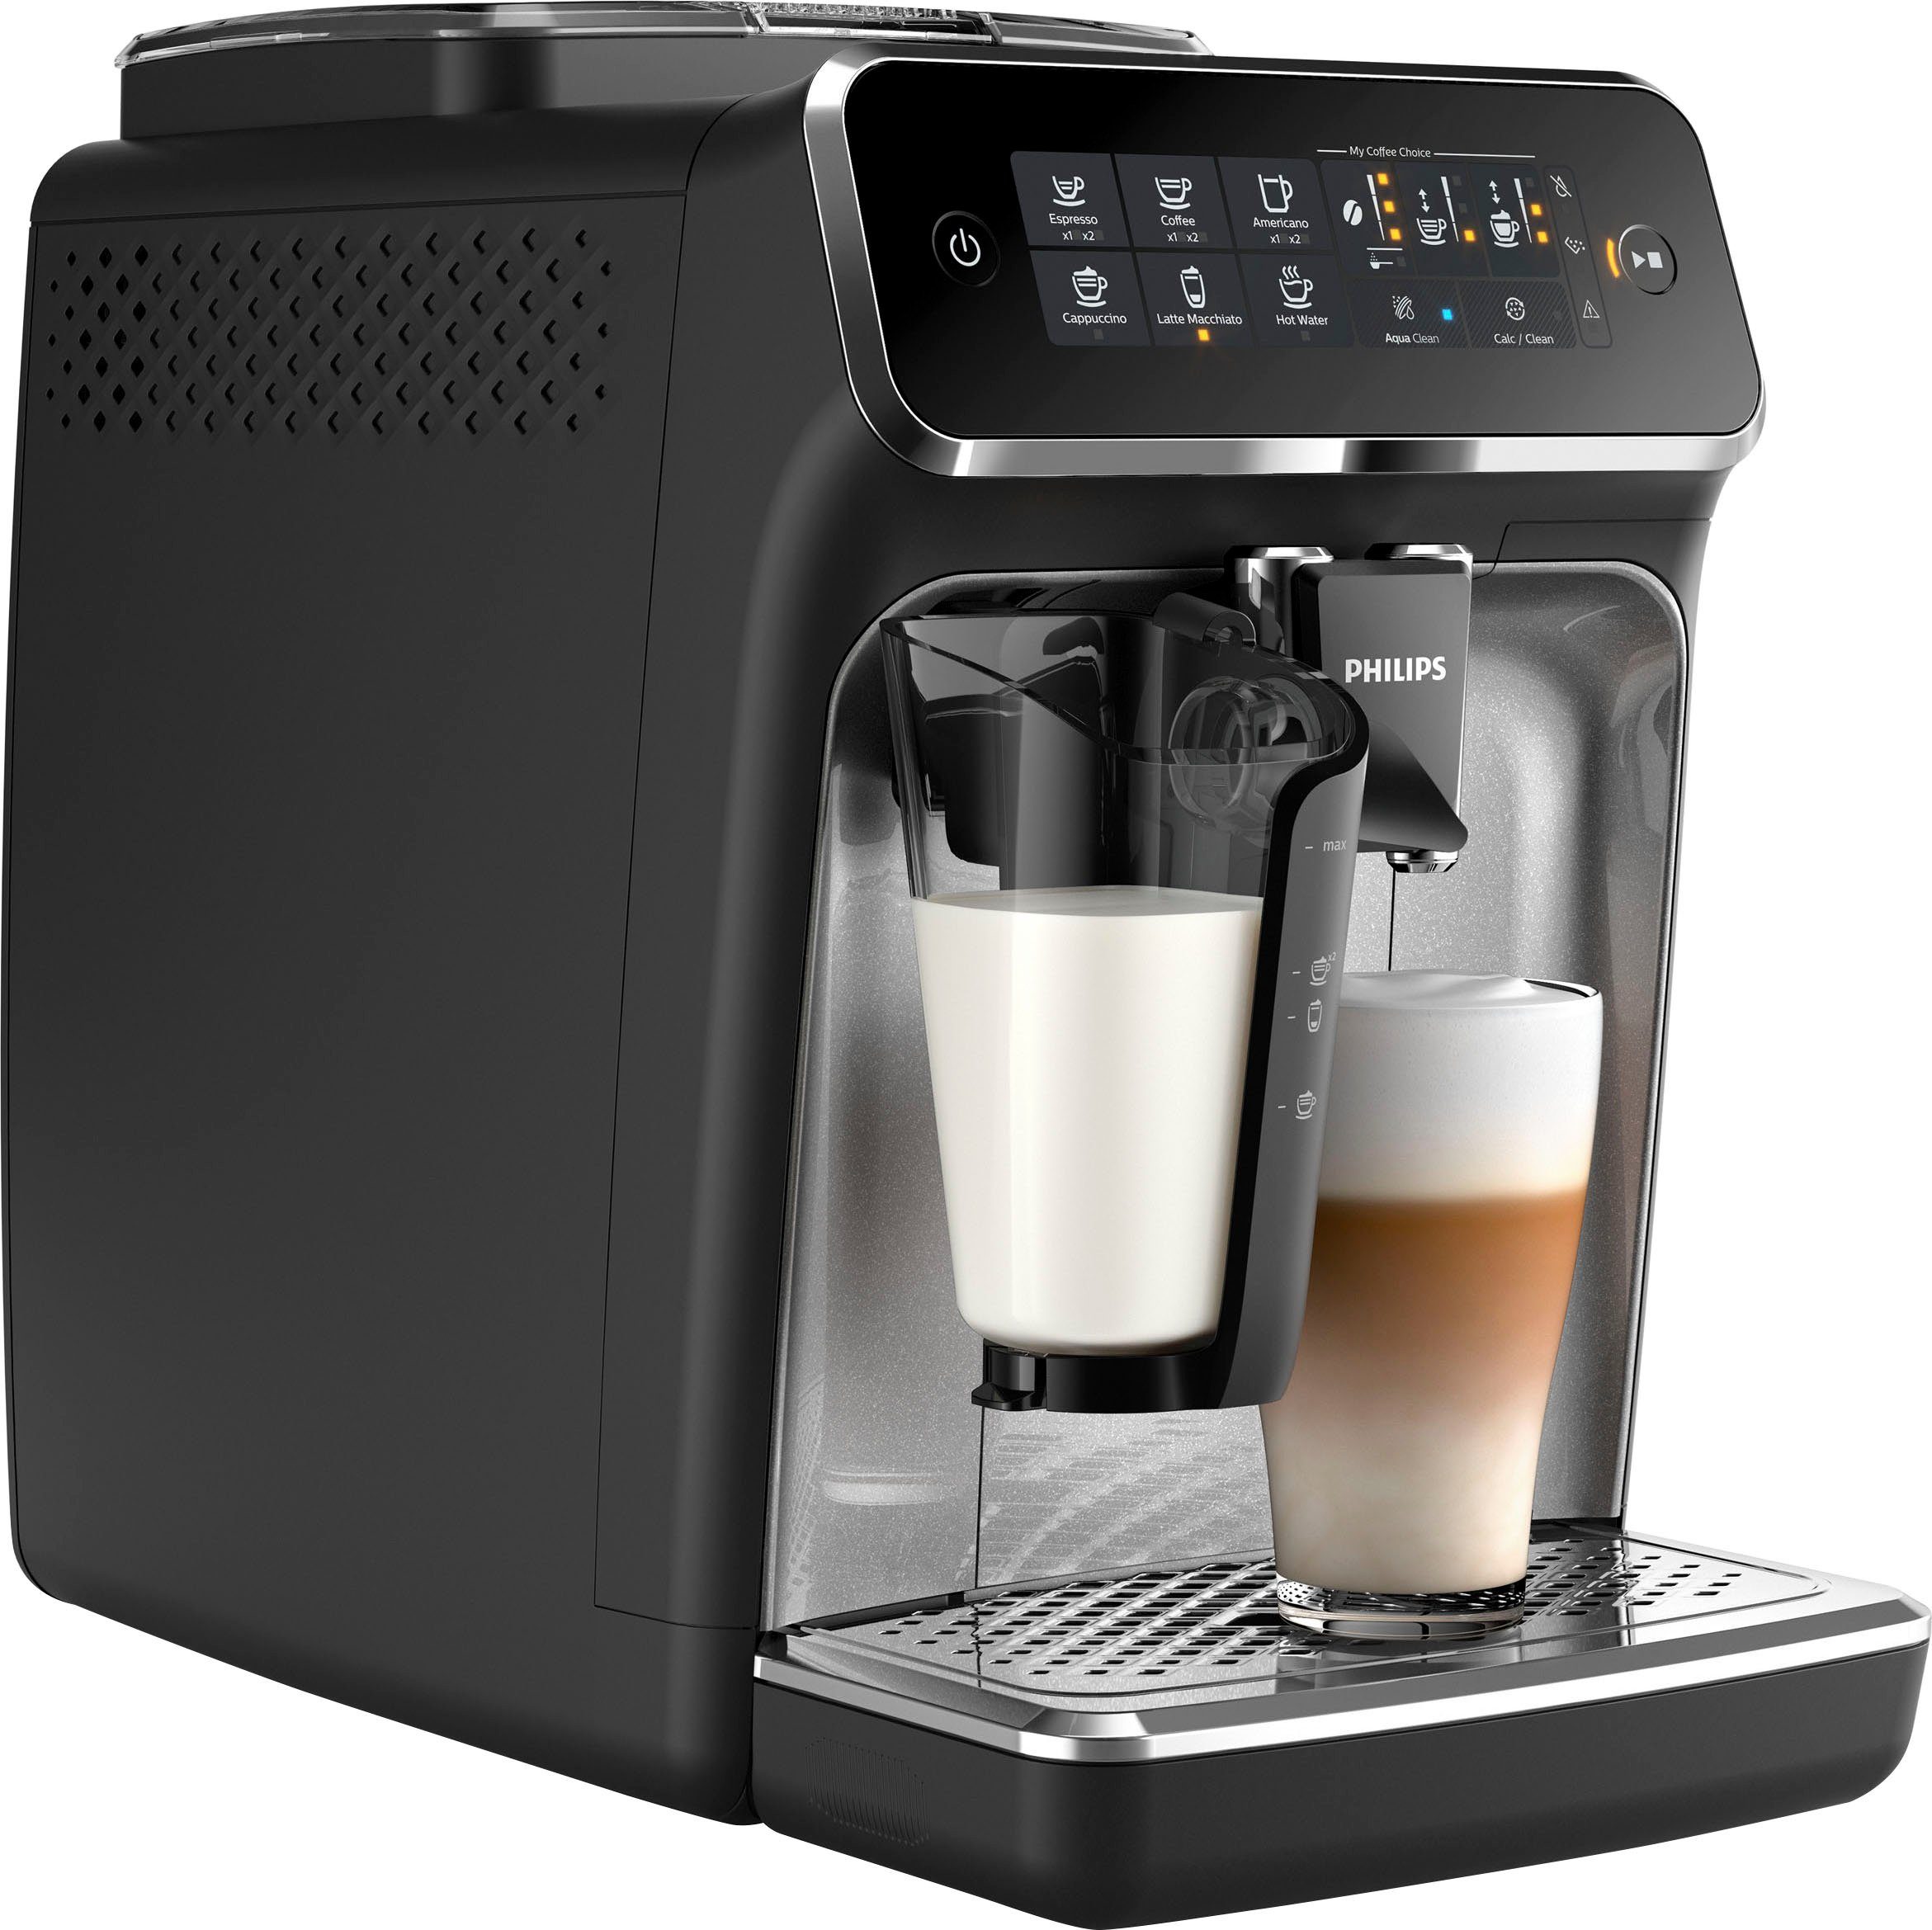 Saeco Kaffeevollautomaten online kaufen | OTTO